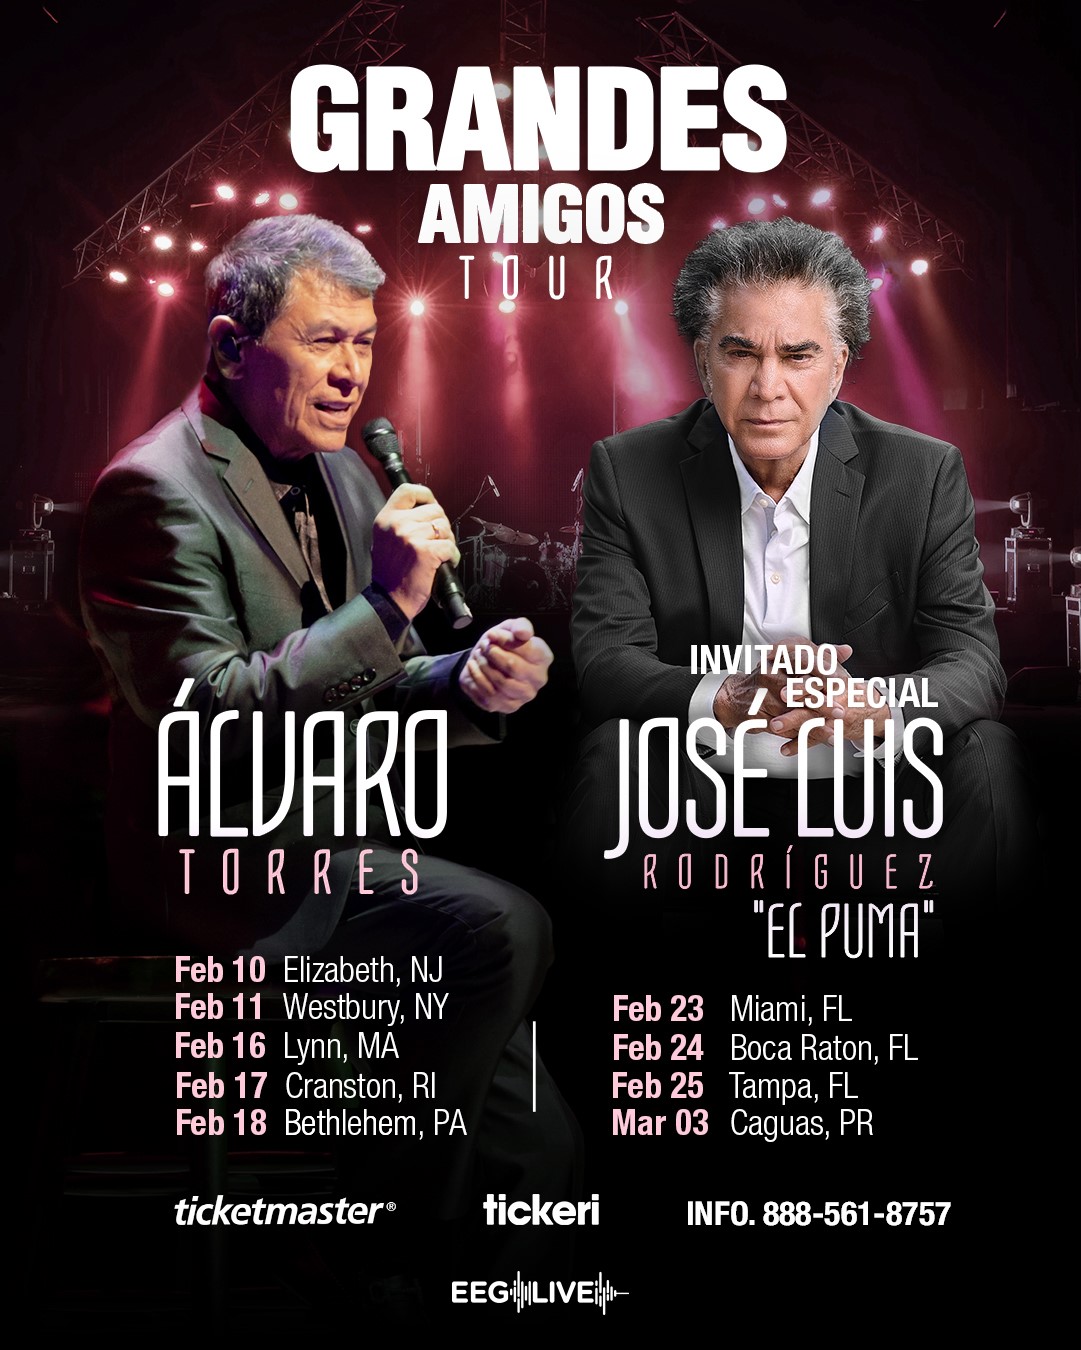 ÁLVARO TORRES y JOSE LUIS RODRÍGUEZ “El Puma” comienzan su gira “Grandes Amigos”